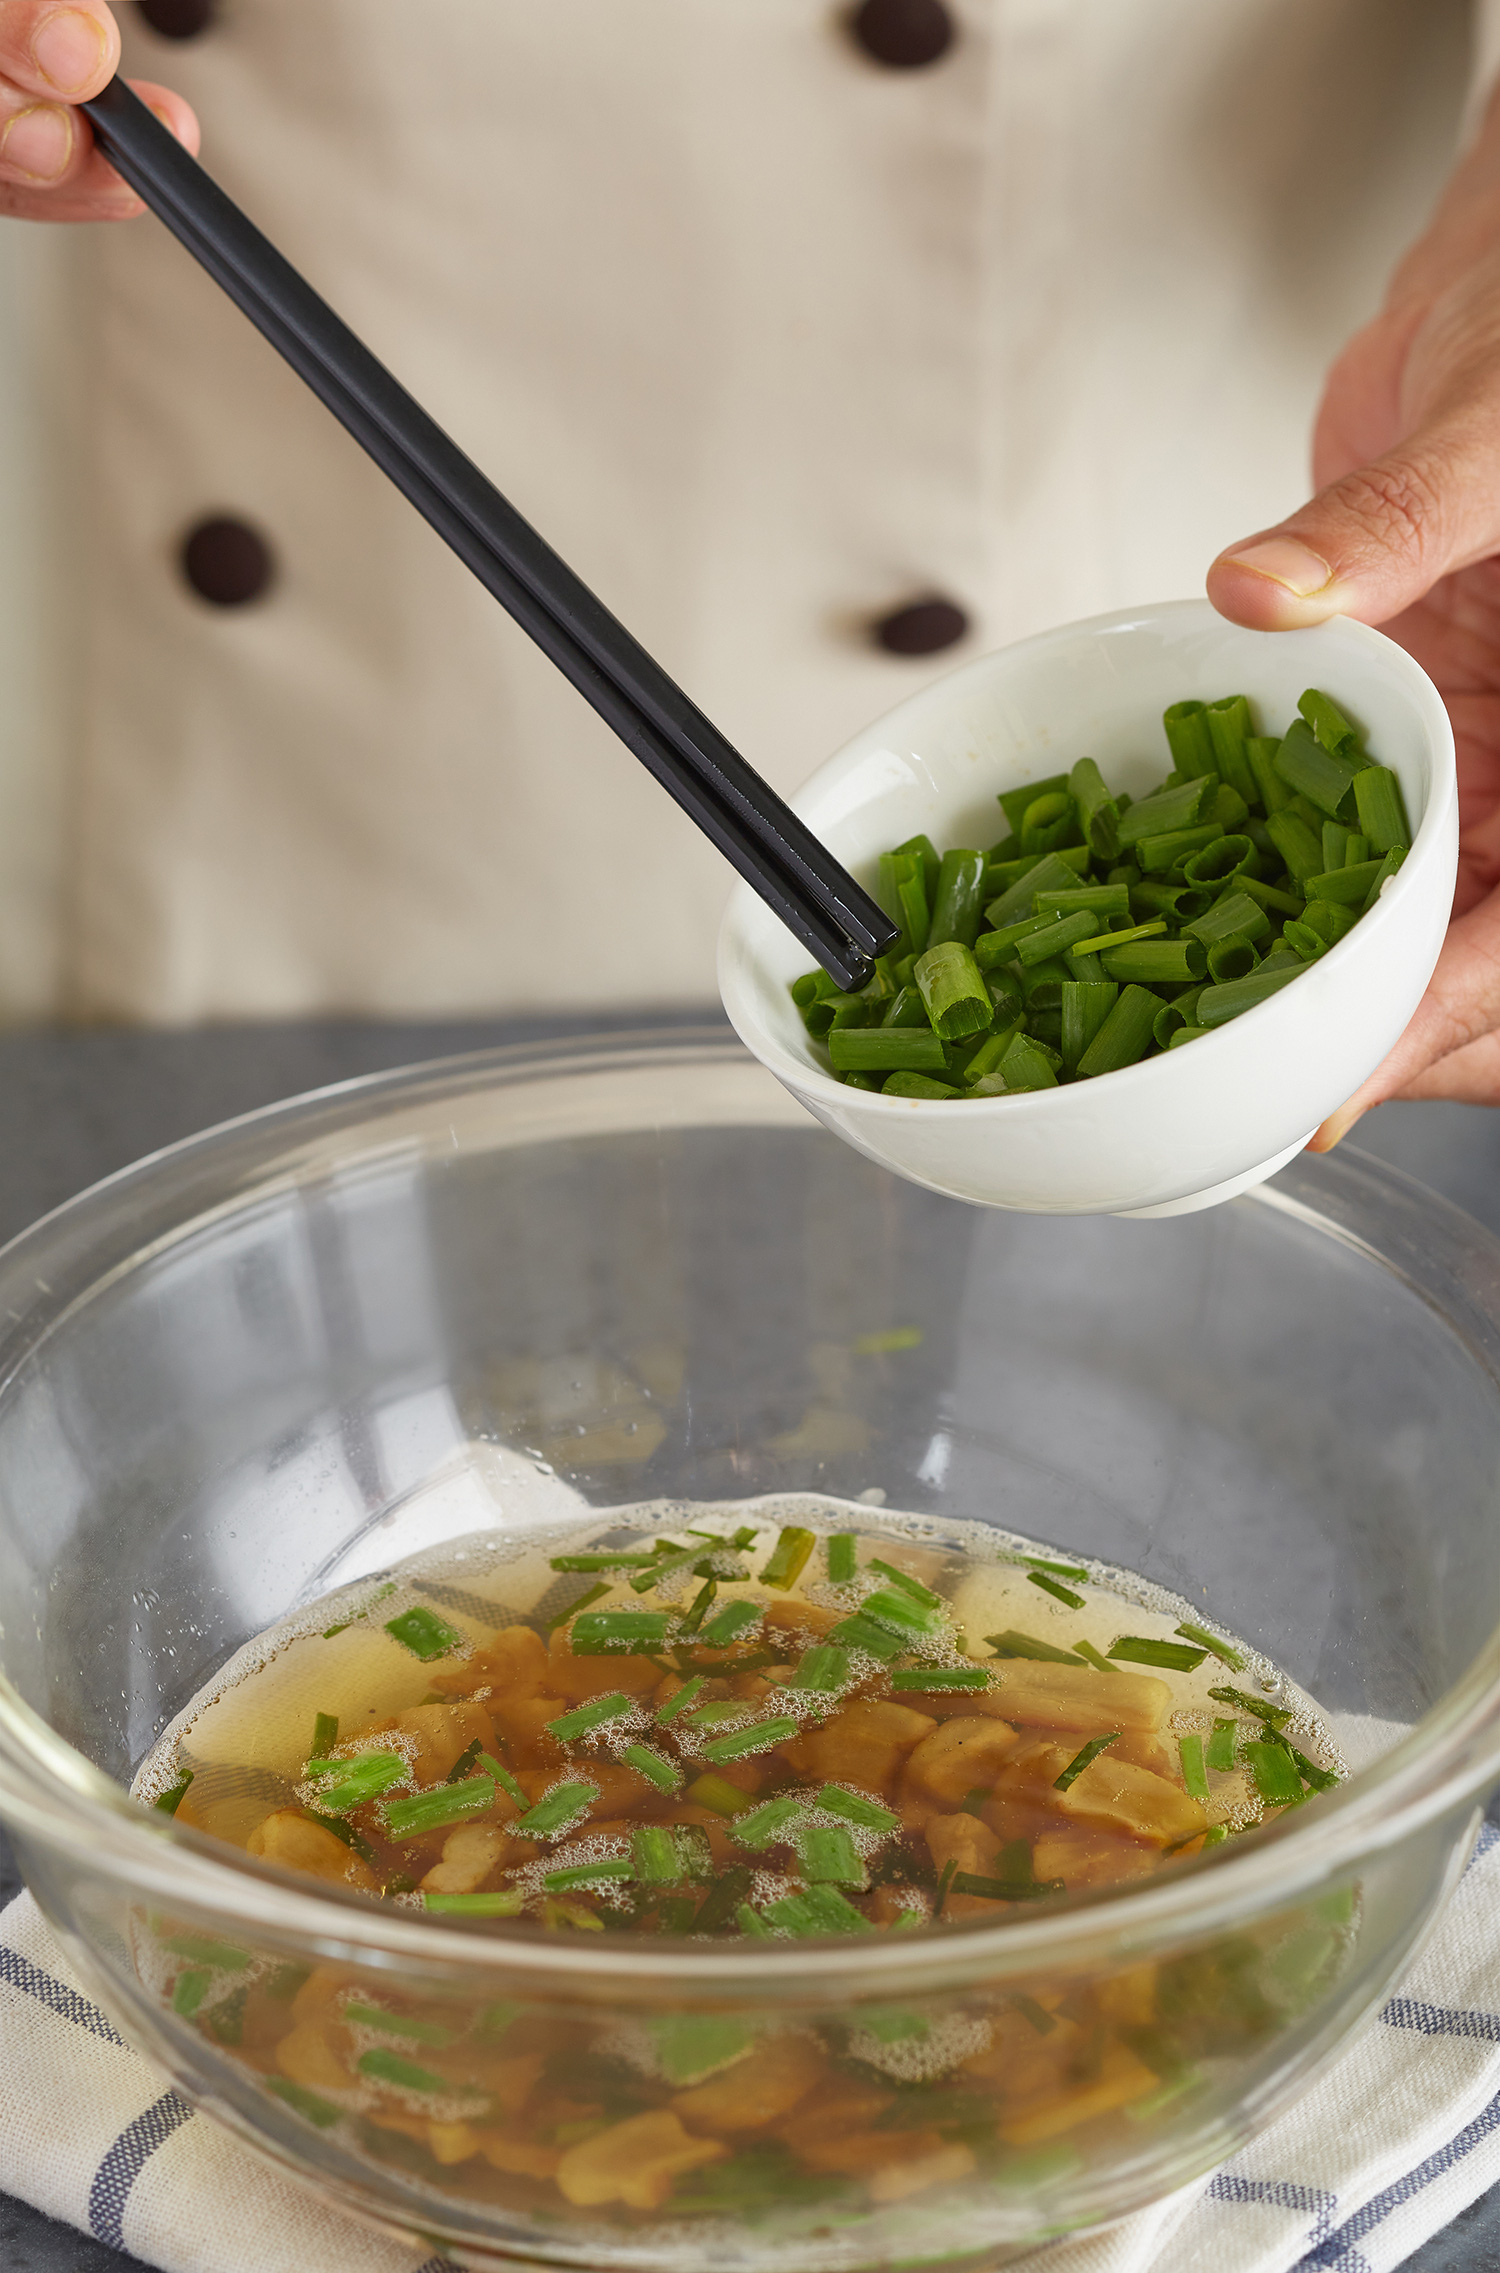 Công thức bắp non xào tóp mỡ sáng tạo từ Chef Tuyết Phạm - Ảnh 3.